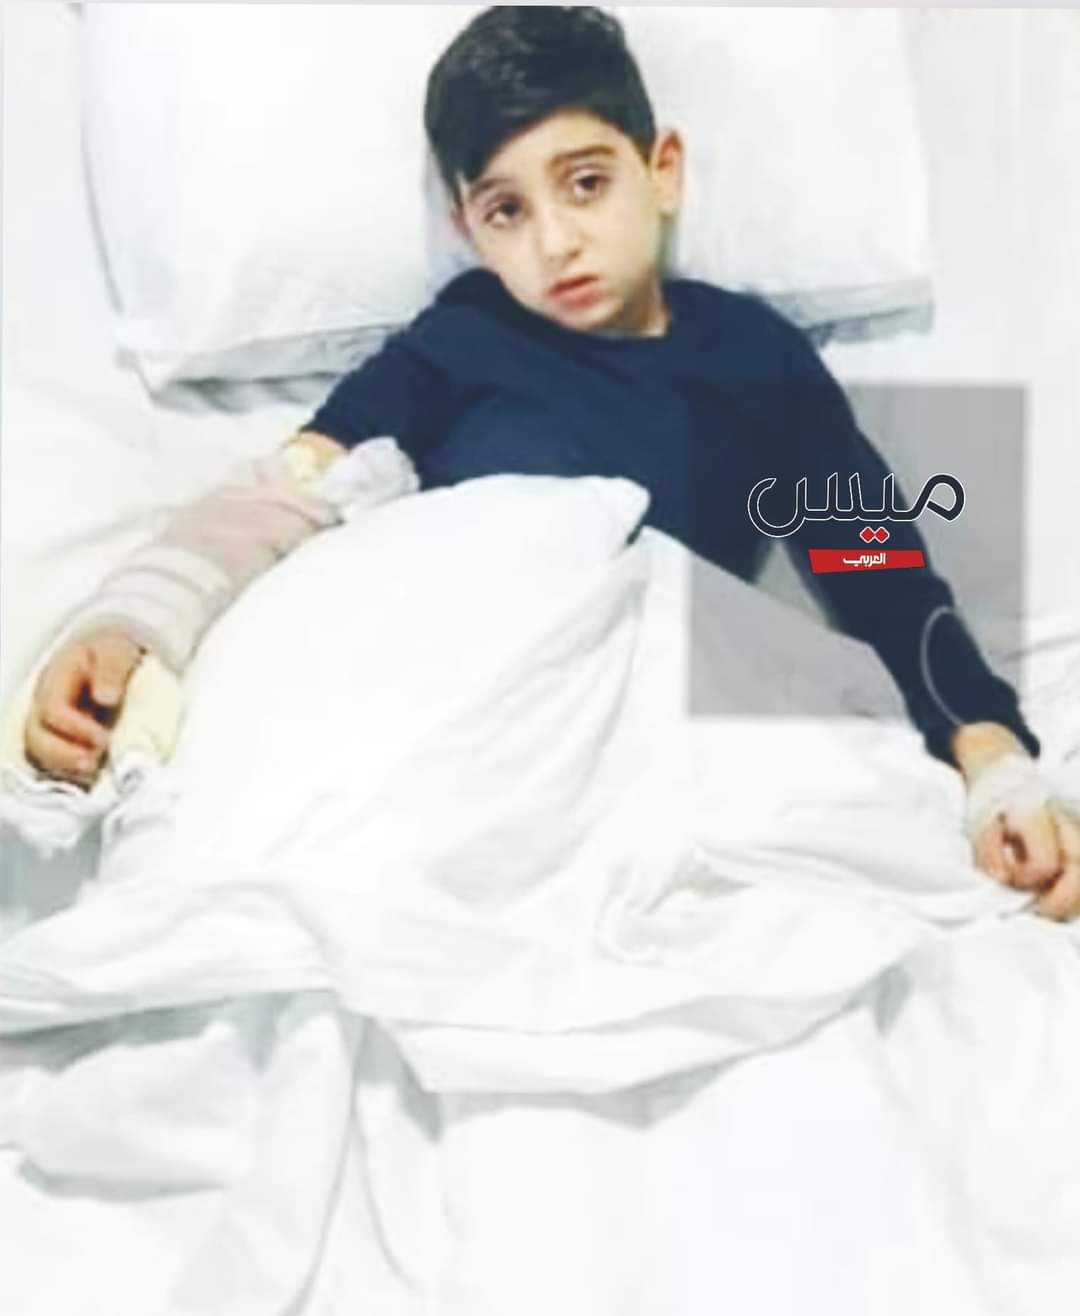  الطفل الجنوبي محمد يسلم الروح في المستشفى بعد دخوله لعلاج بسيط..*   